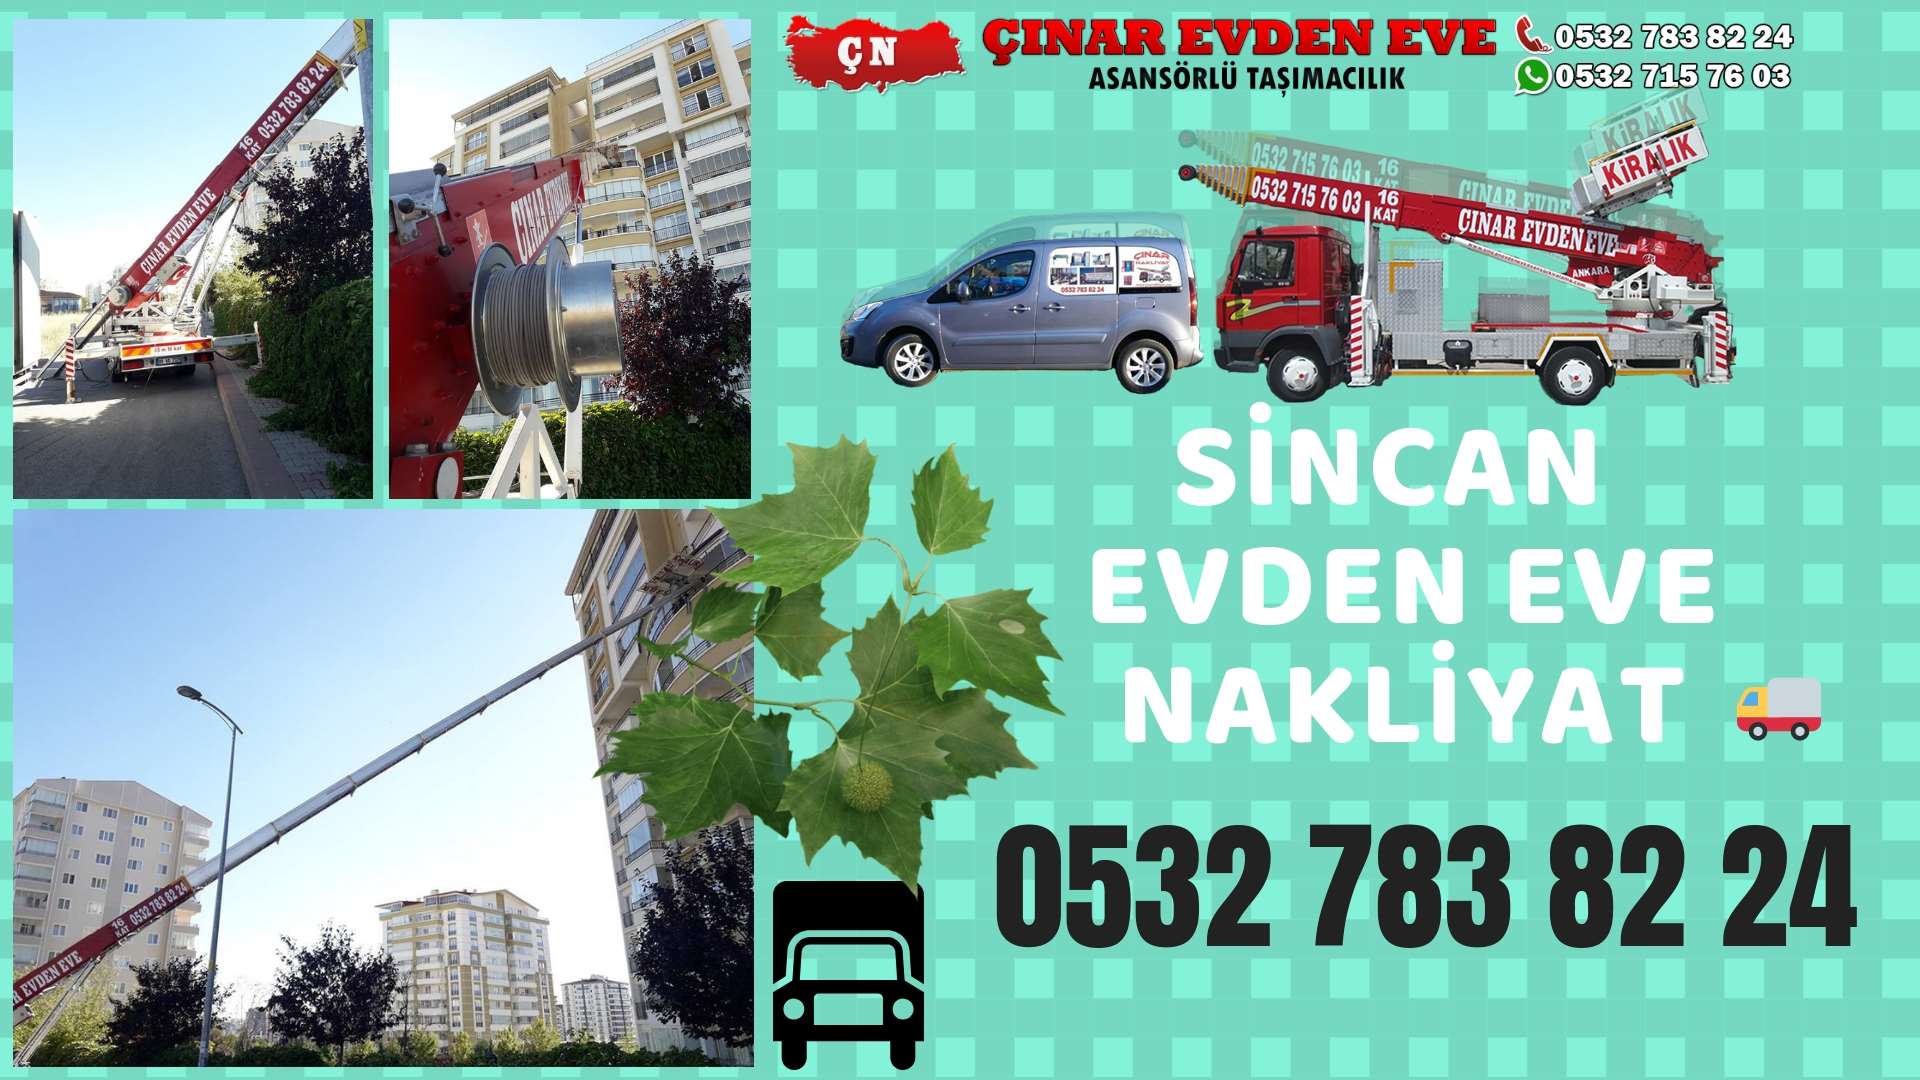 Ankara Törekent sincan ev eşya taşımacılığı, sincan evden eve 0532 715 76 03